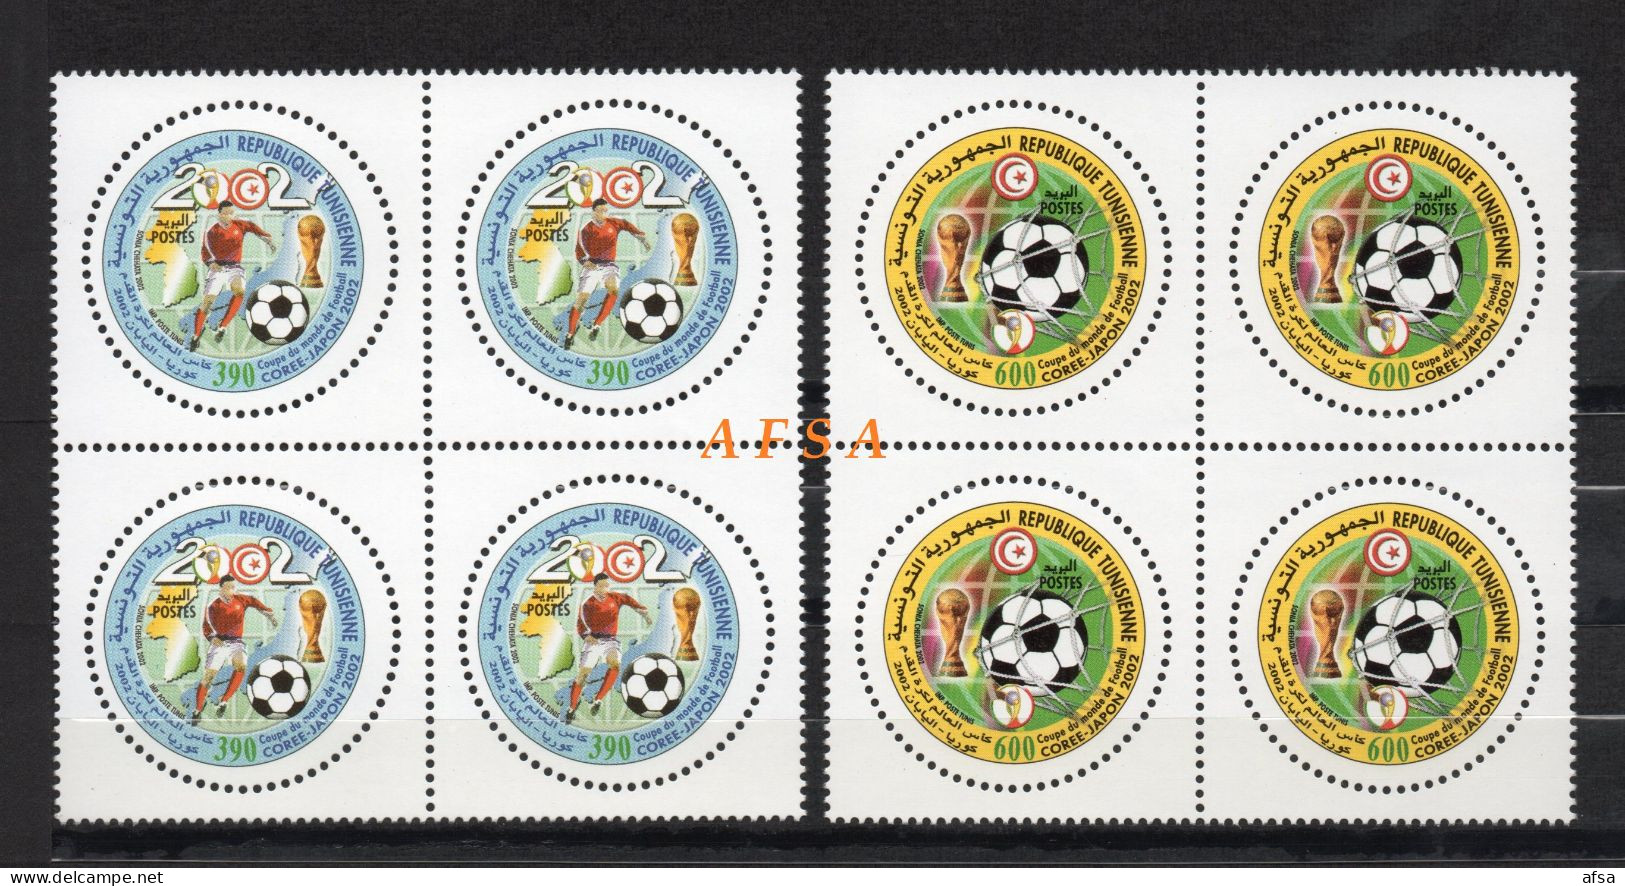 Football World Cup Korea-Japon 2002( Block 4) // Coupe Du Monde De Foot-Ball Corée-Japon 2002 (bloc De 4) - 2002 – South Korea / Japan